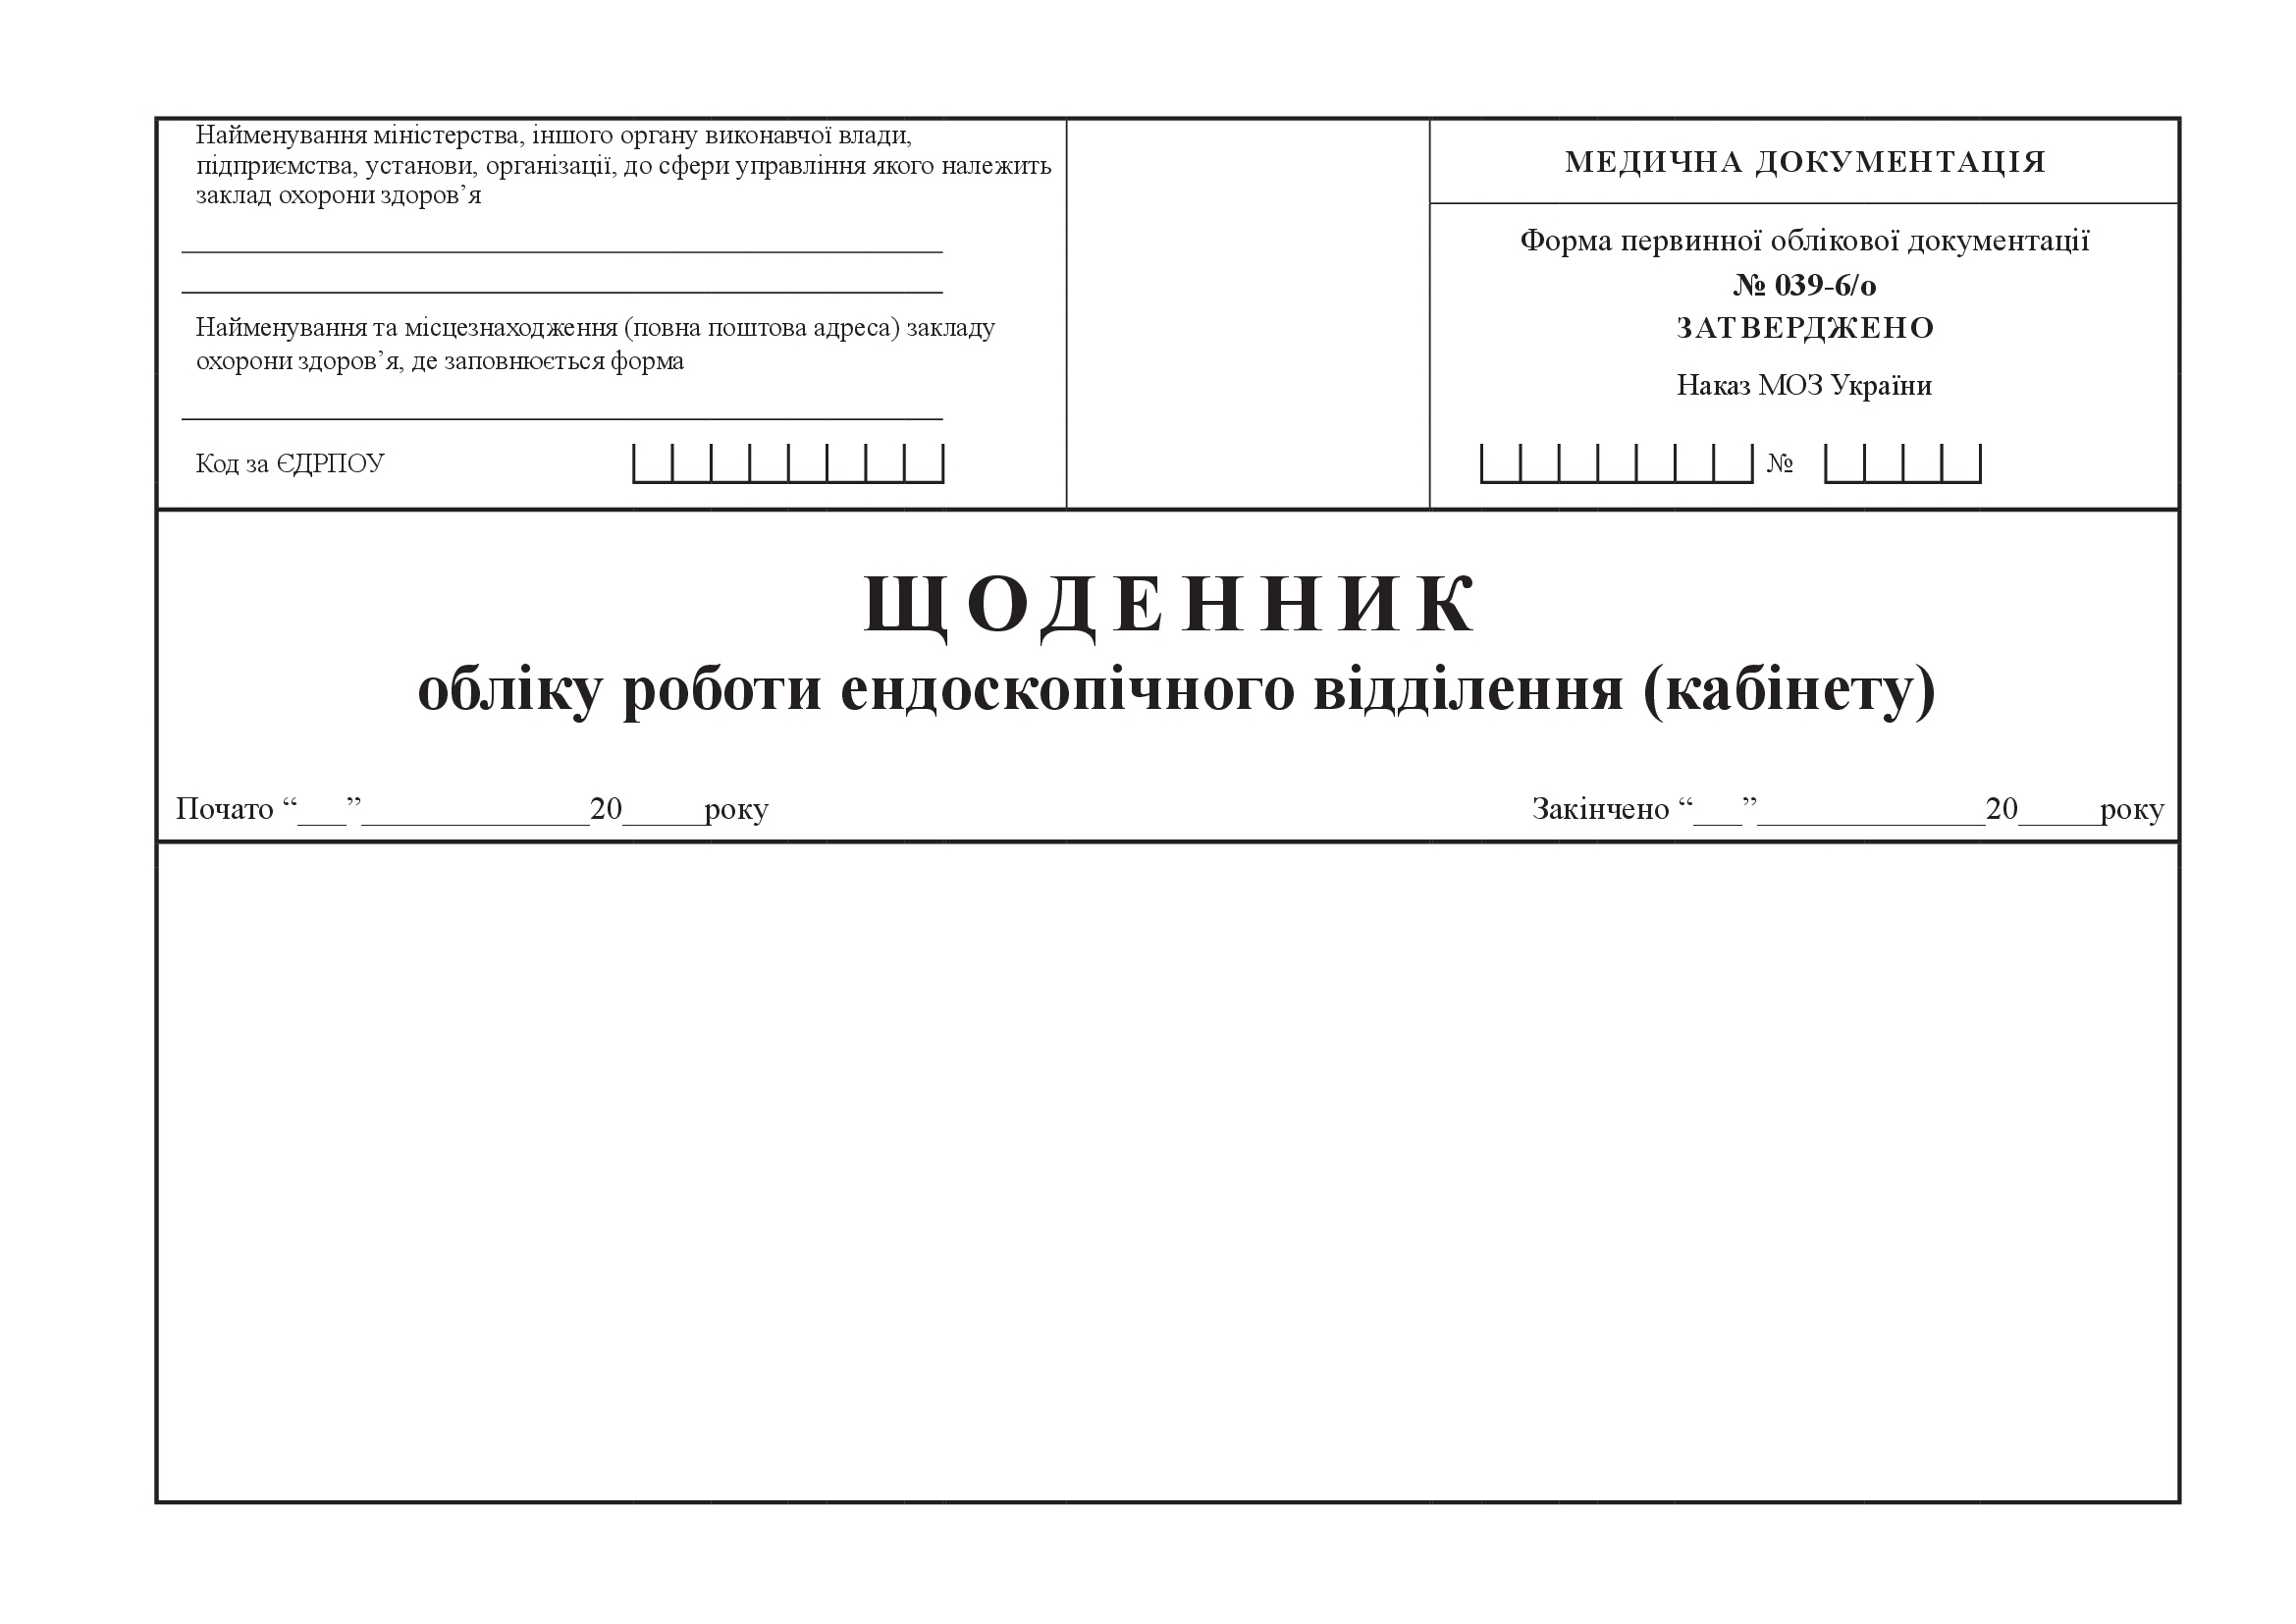 Щоденник обліку роботи ендоскопічного відділення (кабінету), форма 039-6/о. Автор — Міністерство охорони здоров'я України. 